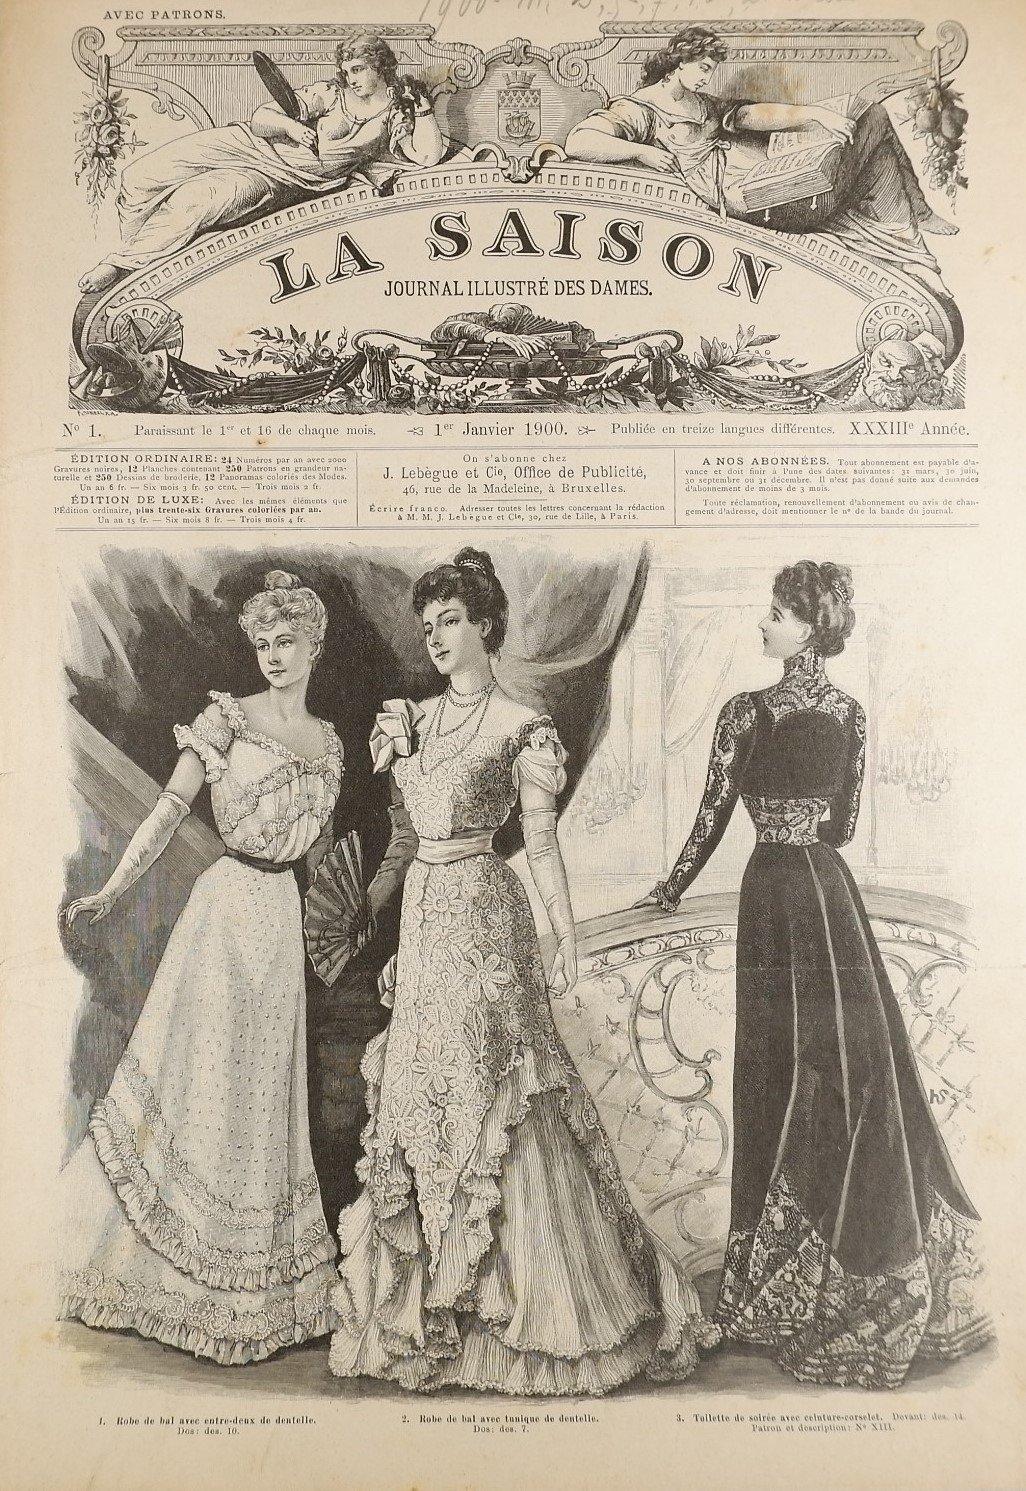 Sammlung: La Saison, Journal illustre`des dames (1900) (Volkskunde- und Freilichtmuseum Roscheider Hof RR-F)